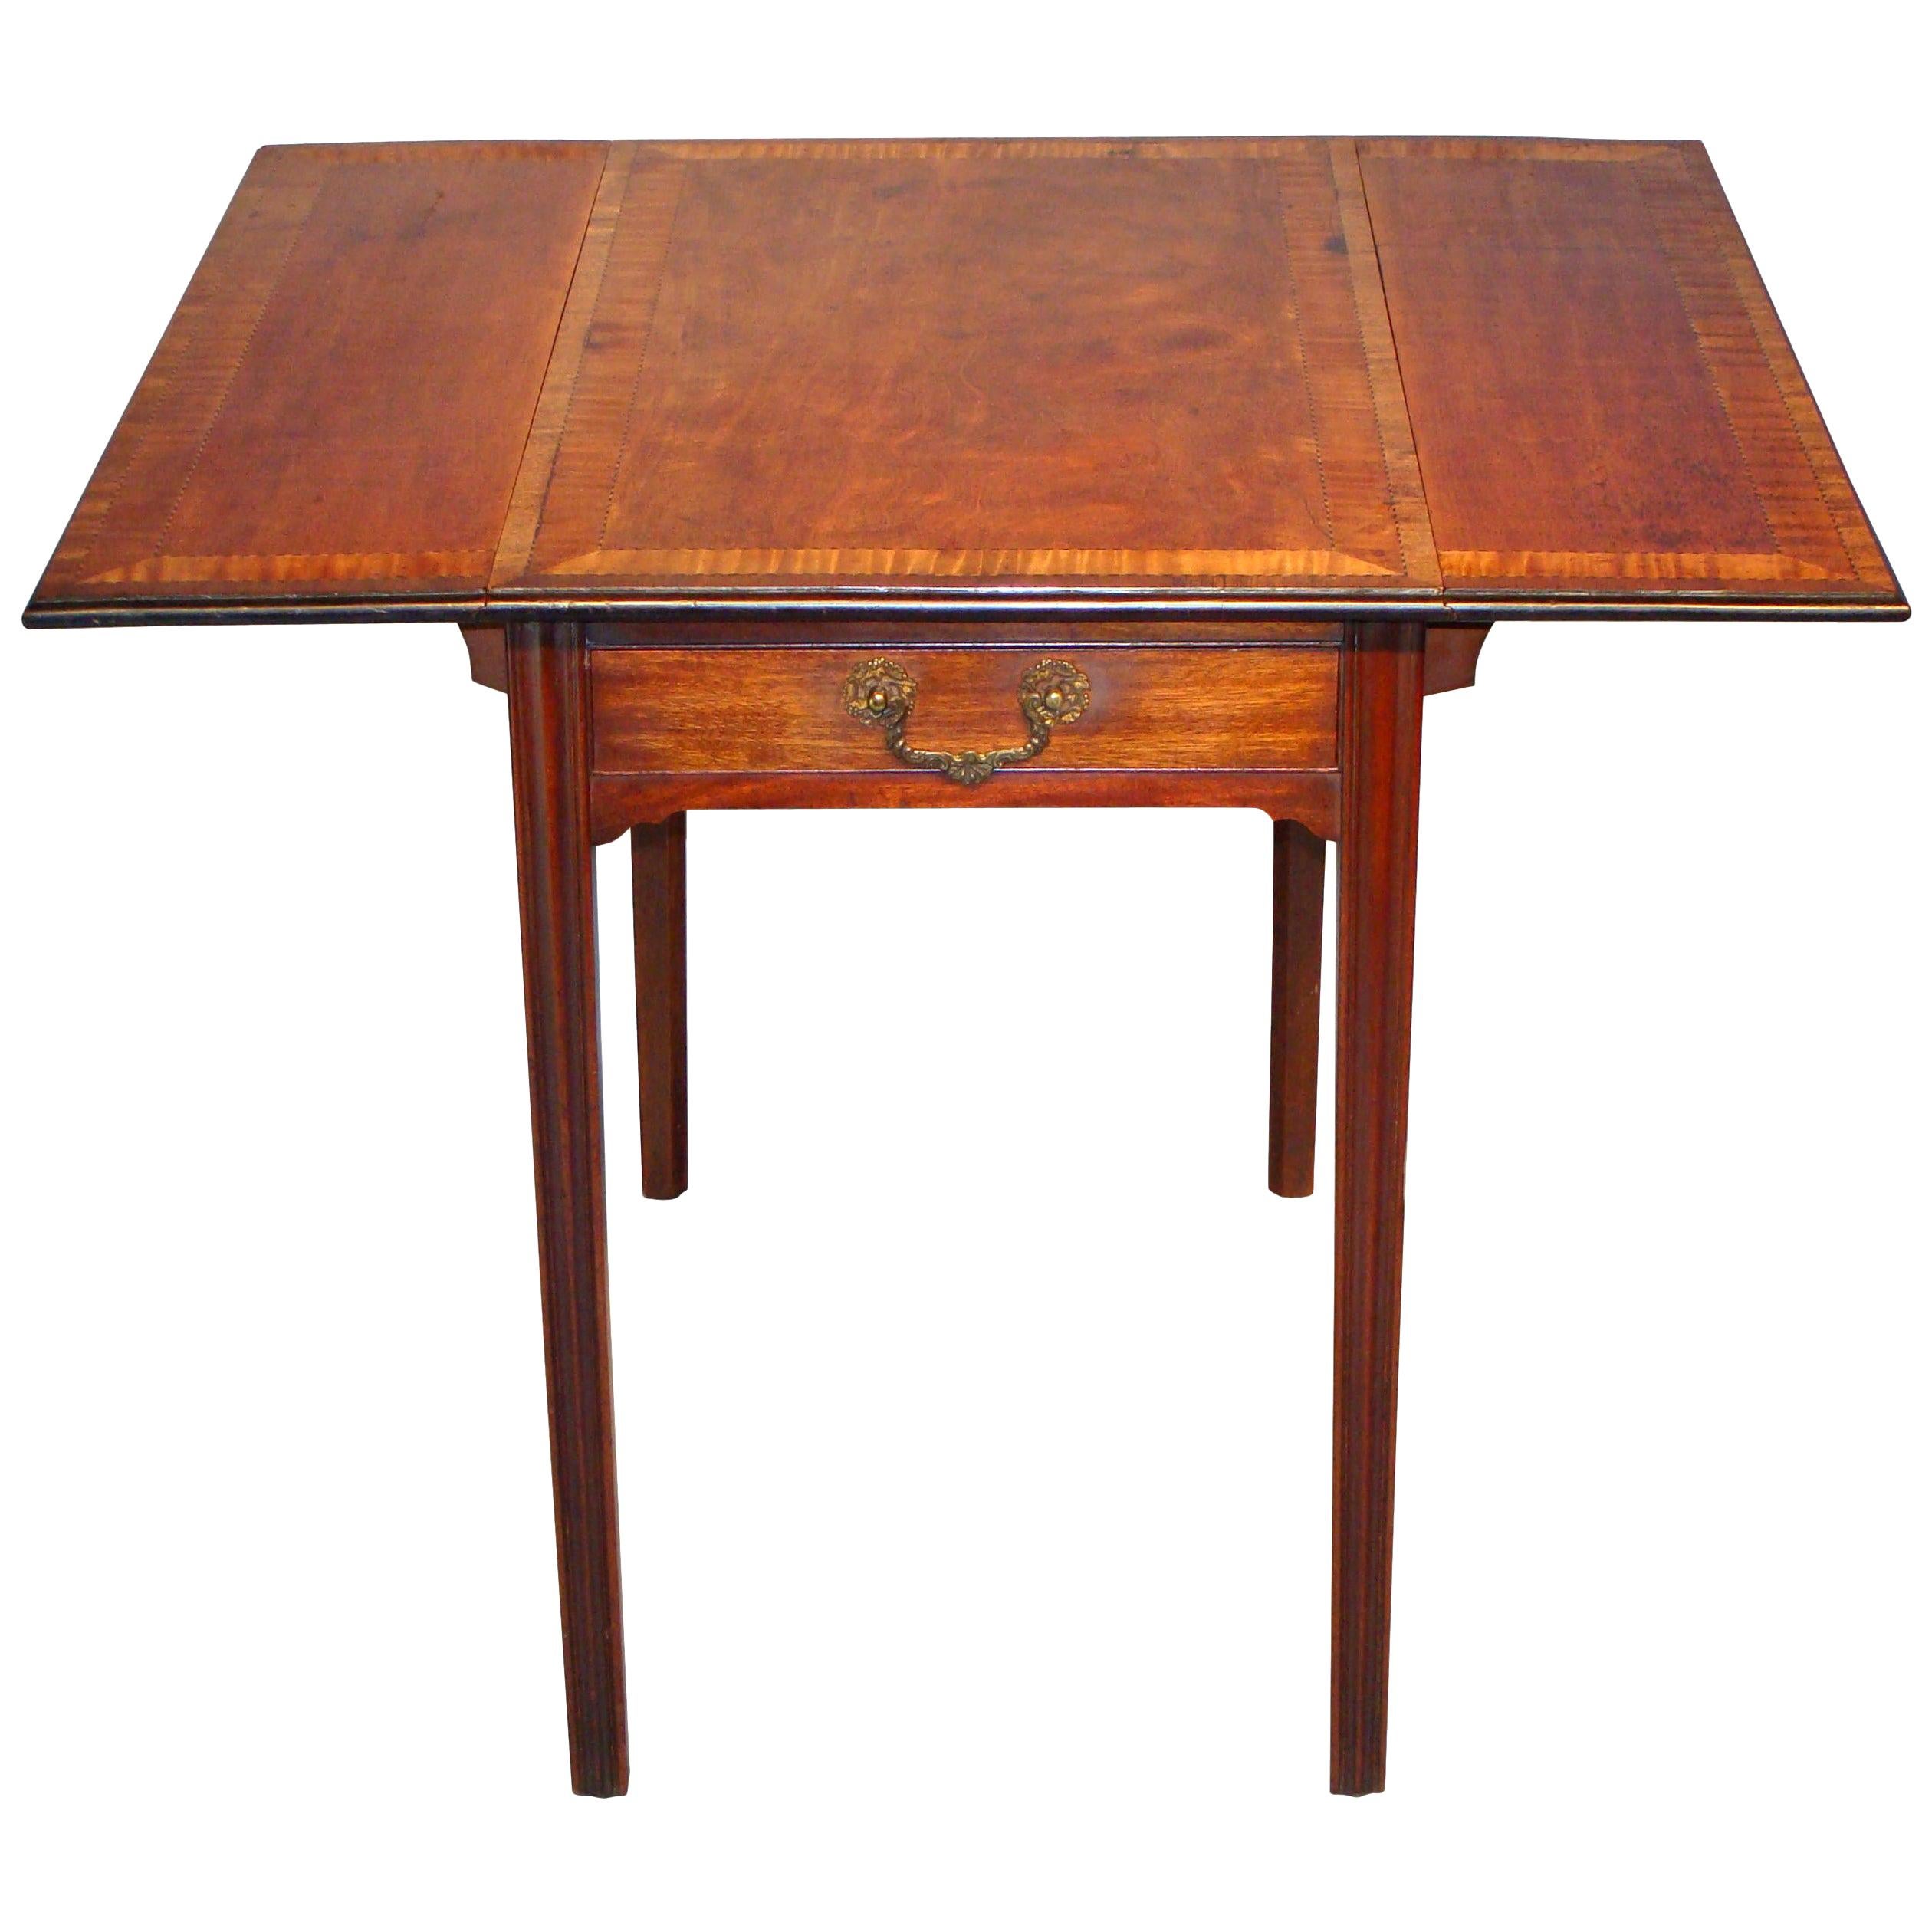 George III Period Satinwood Pembroke Table